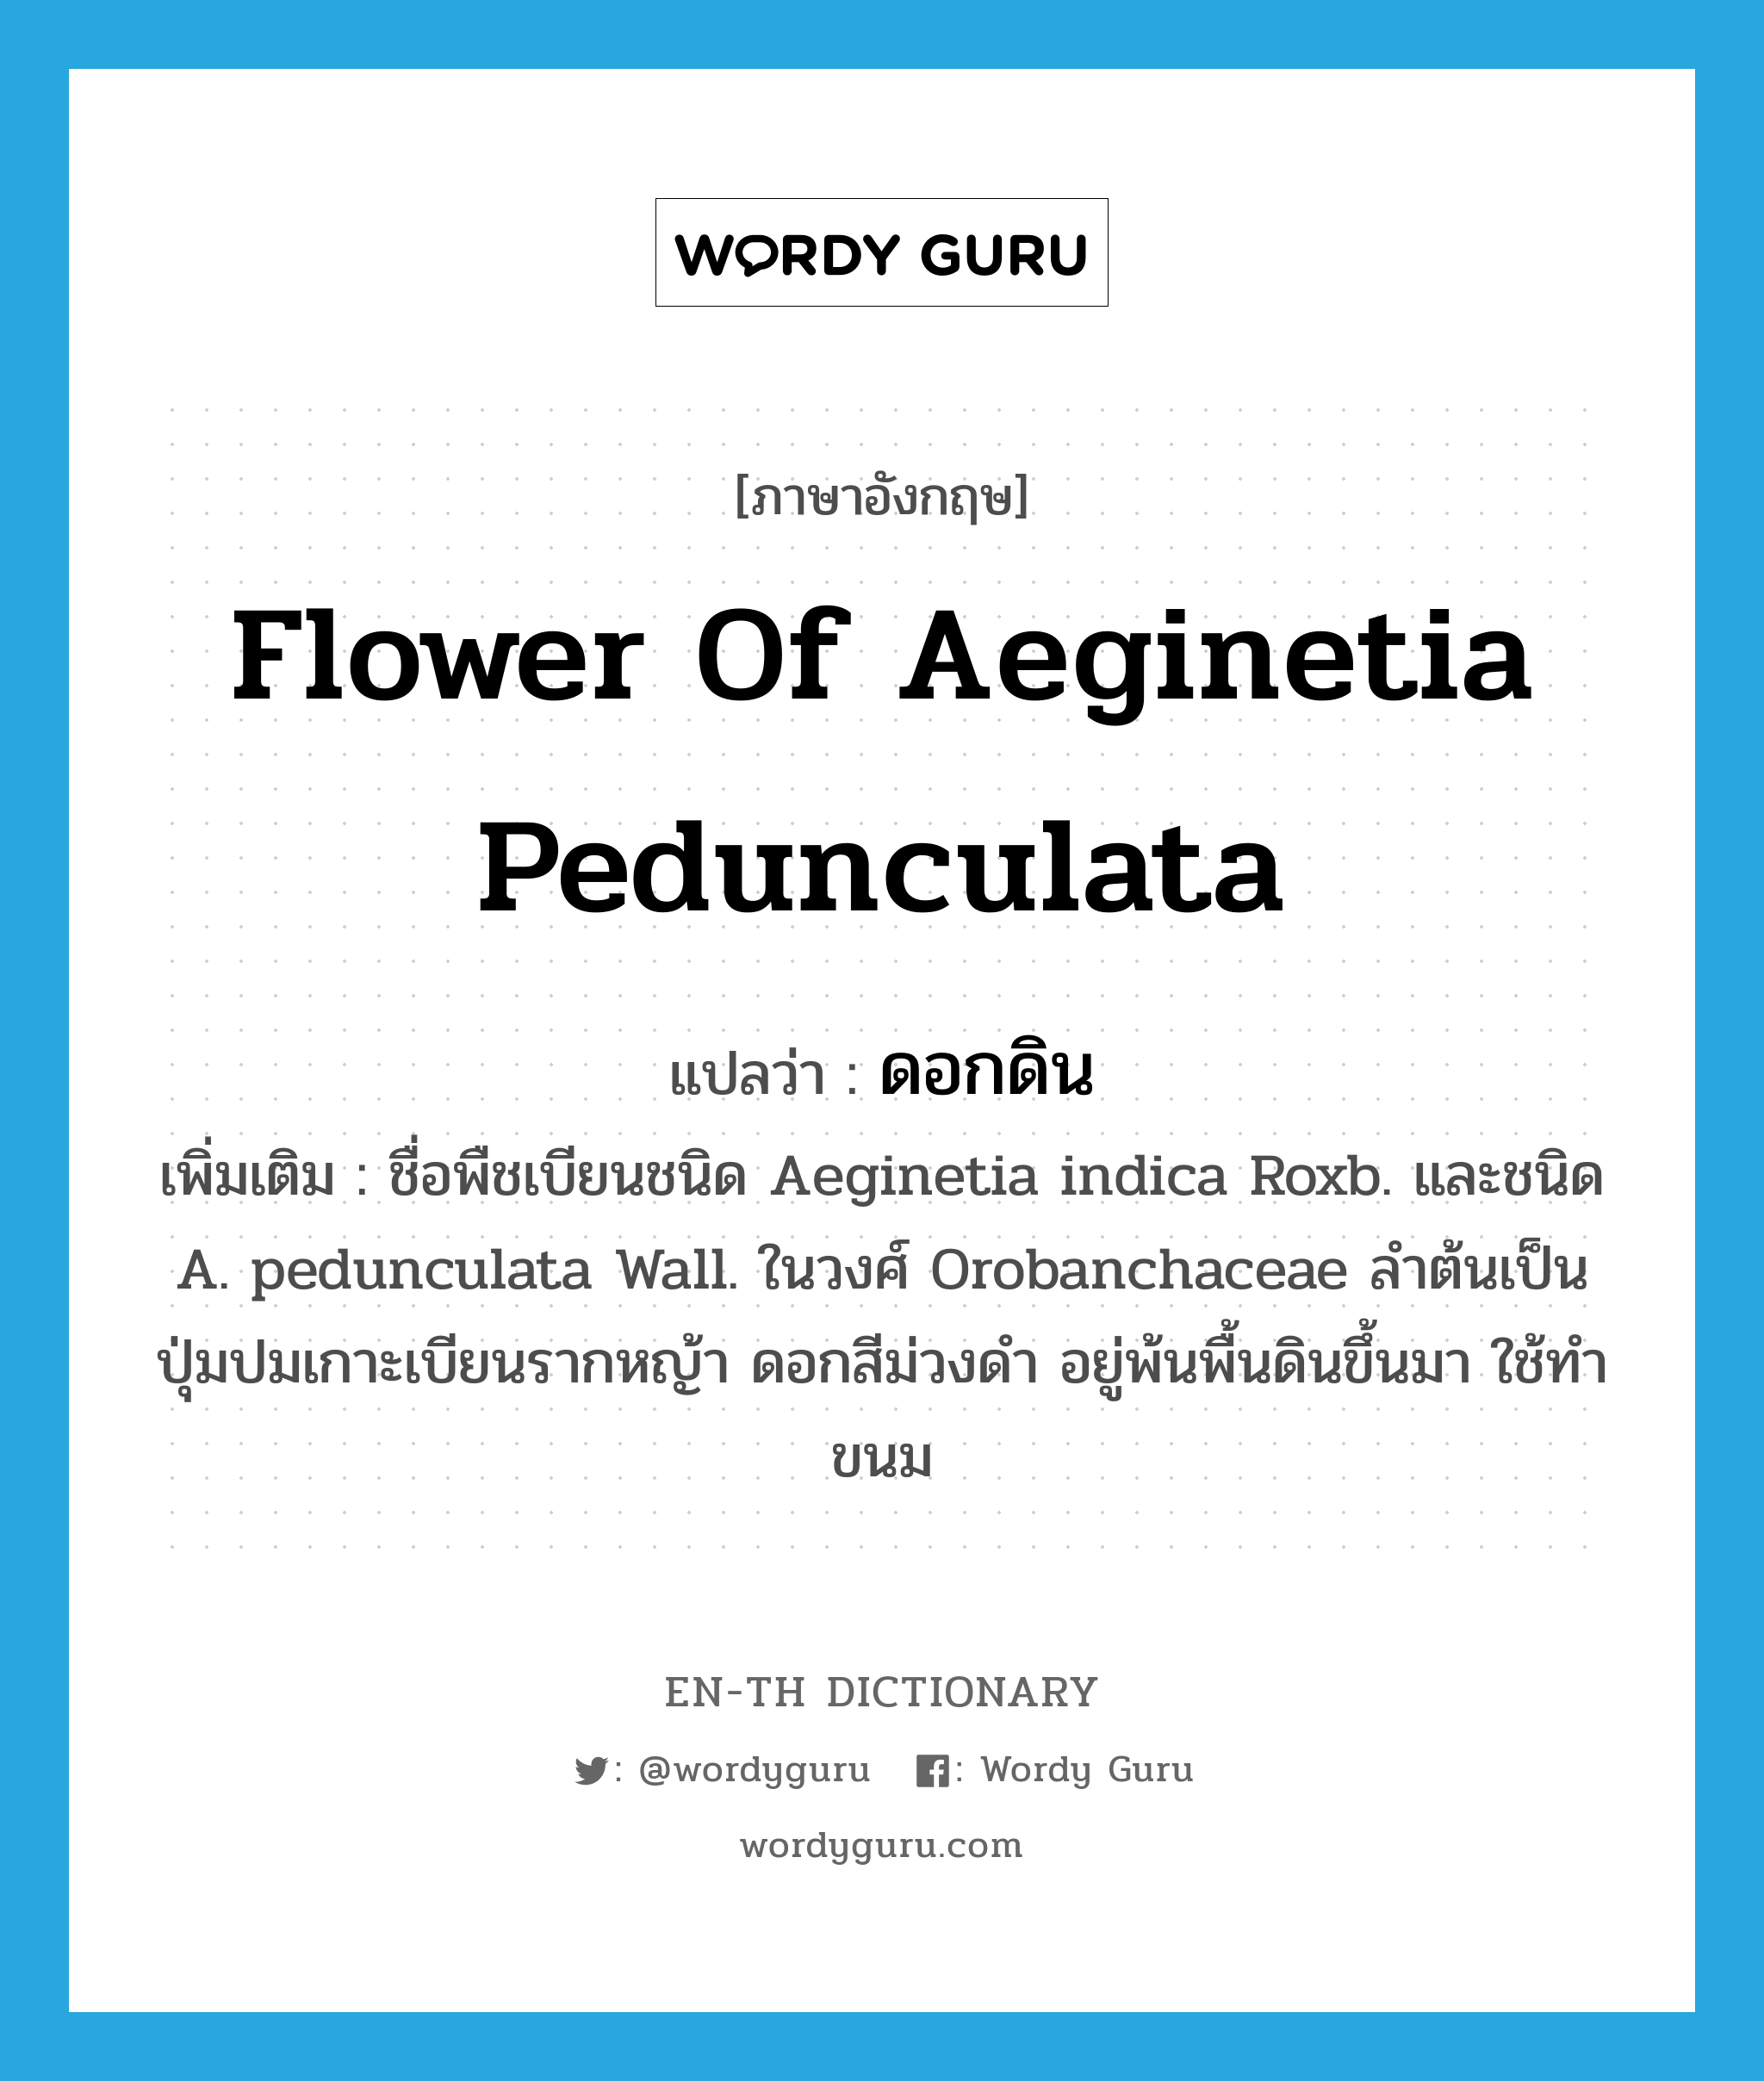 ดอกดิน ภาษาอังกฤษ?, คำศัพท์ภาษาอังกฤษ ดอกดิน แปลว่า flower of Aeginetia pedunculata ประเภท N เพิ่มเติม ชื่อพืชเบียนชนิด Aeginetia indica Roxb. และชนิด A. pedunculata Wall. ในวงศ์ Orobanchaceae ลำต้นเป็นปุ่มปมเกาะเบียนรากหญ้า ดอกสีม่วงดำ อยู่พ้นพื้นดินขึ้นมา ใช้ทำขนม หมวด N